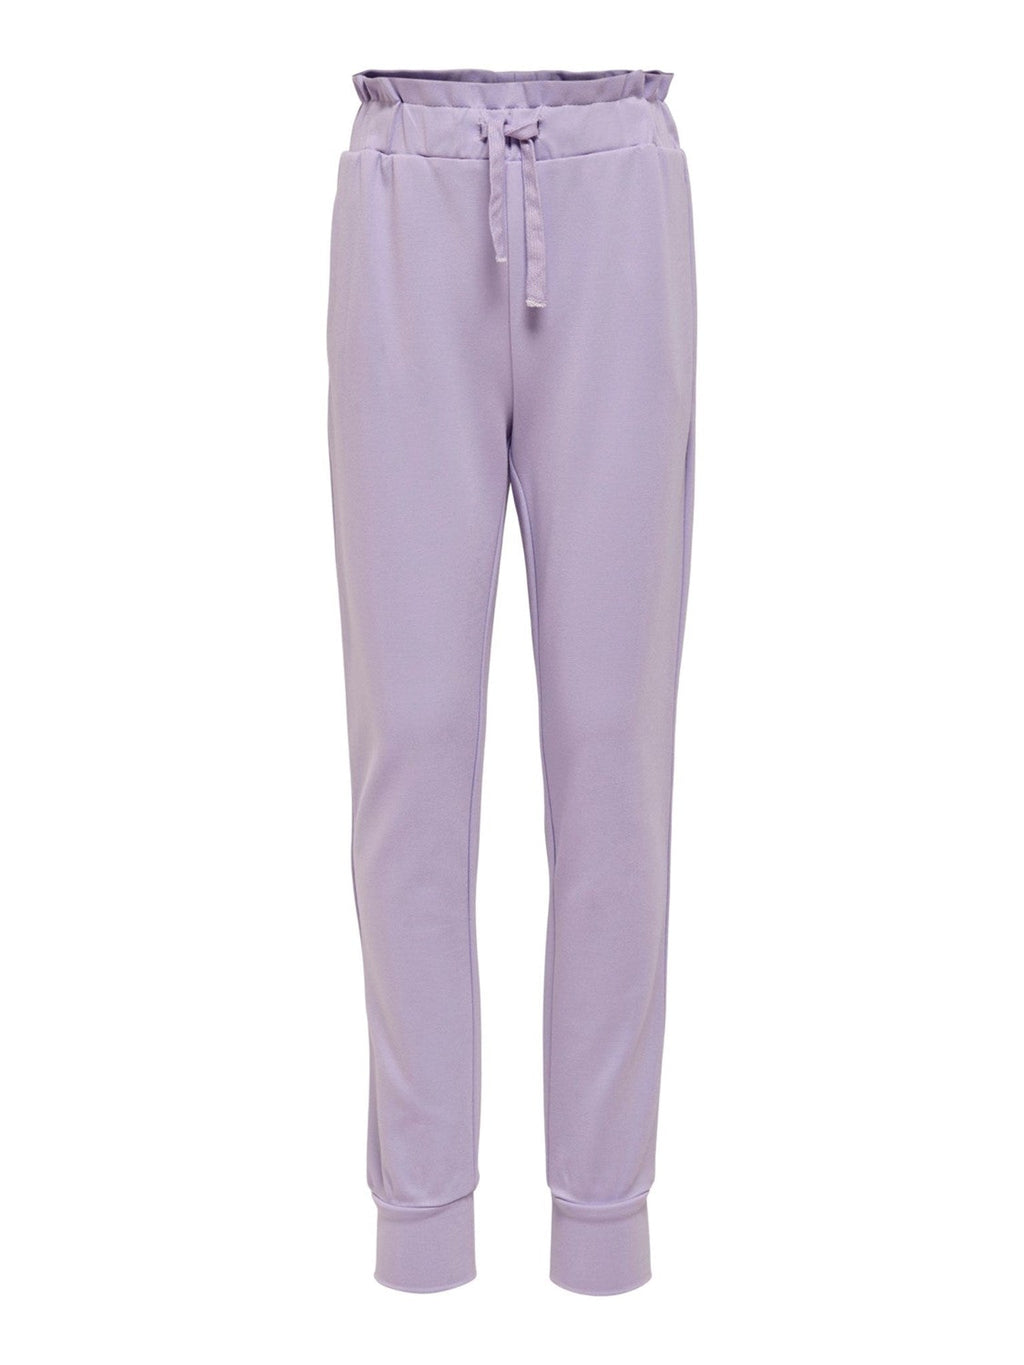 Poptrash pants (kids) - Lavender